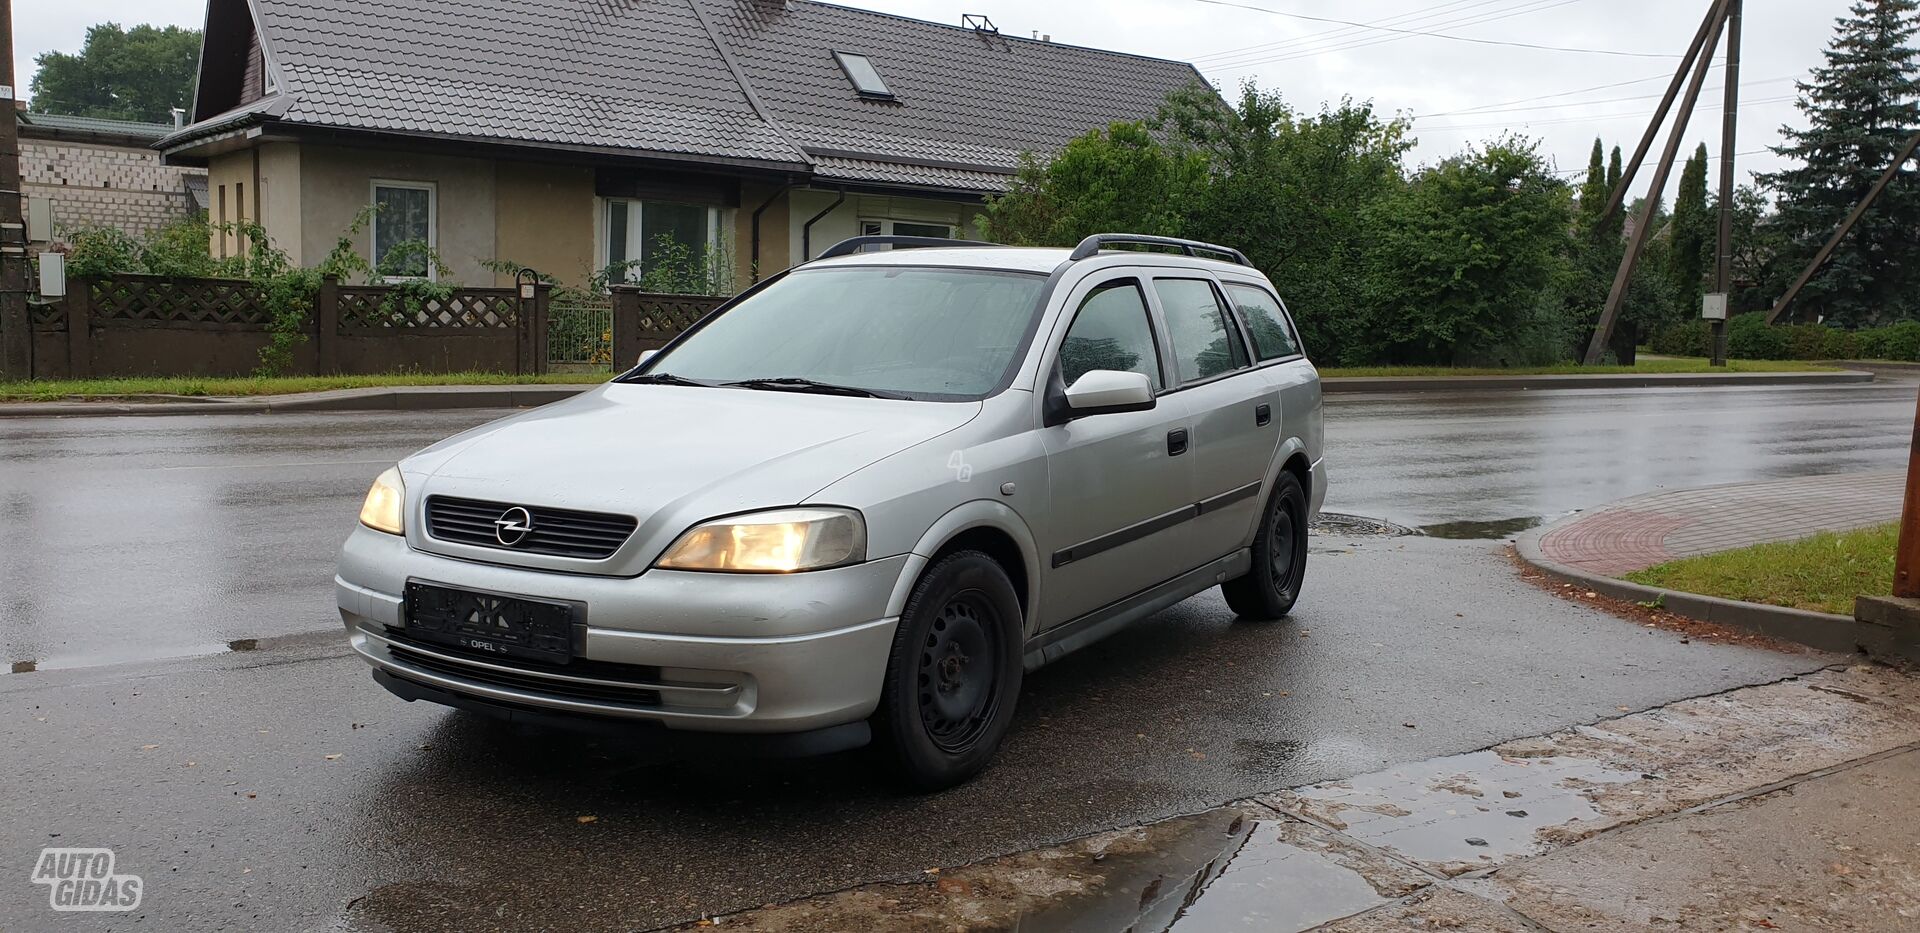 Opel Astra I 60 kW, kablys 1998 y parts